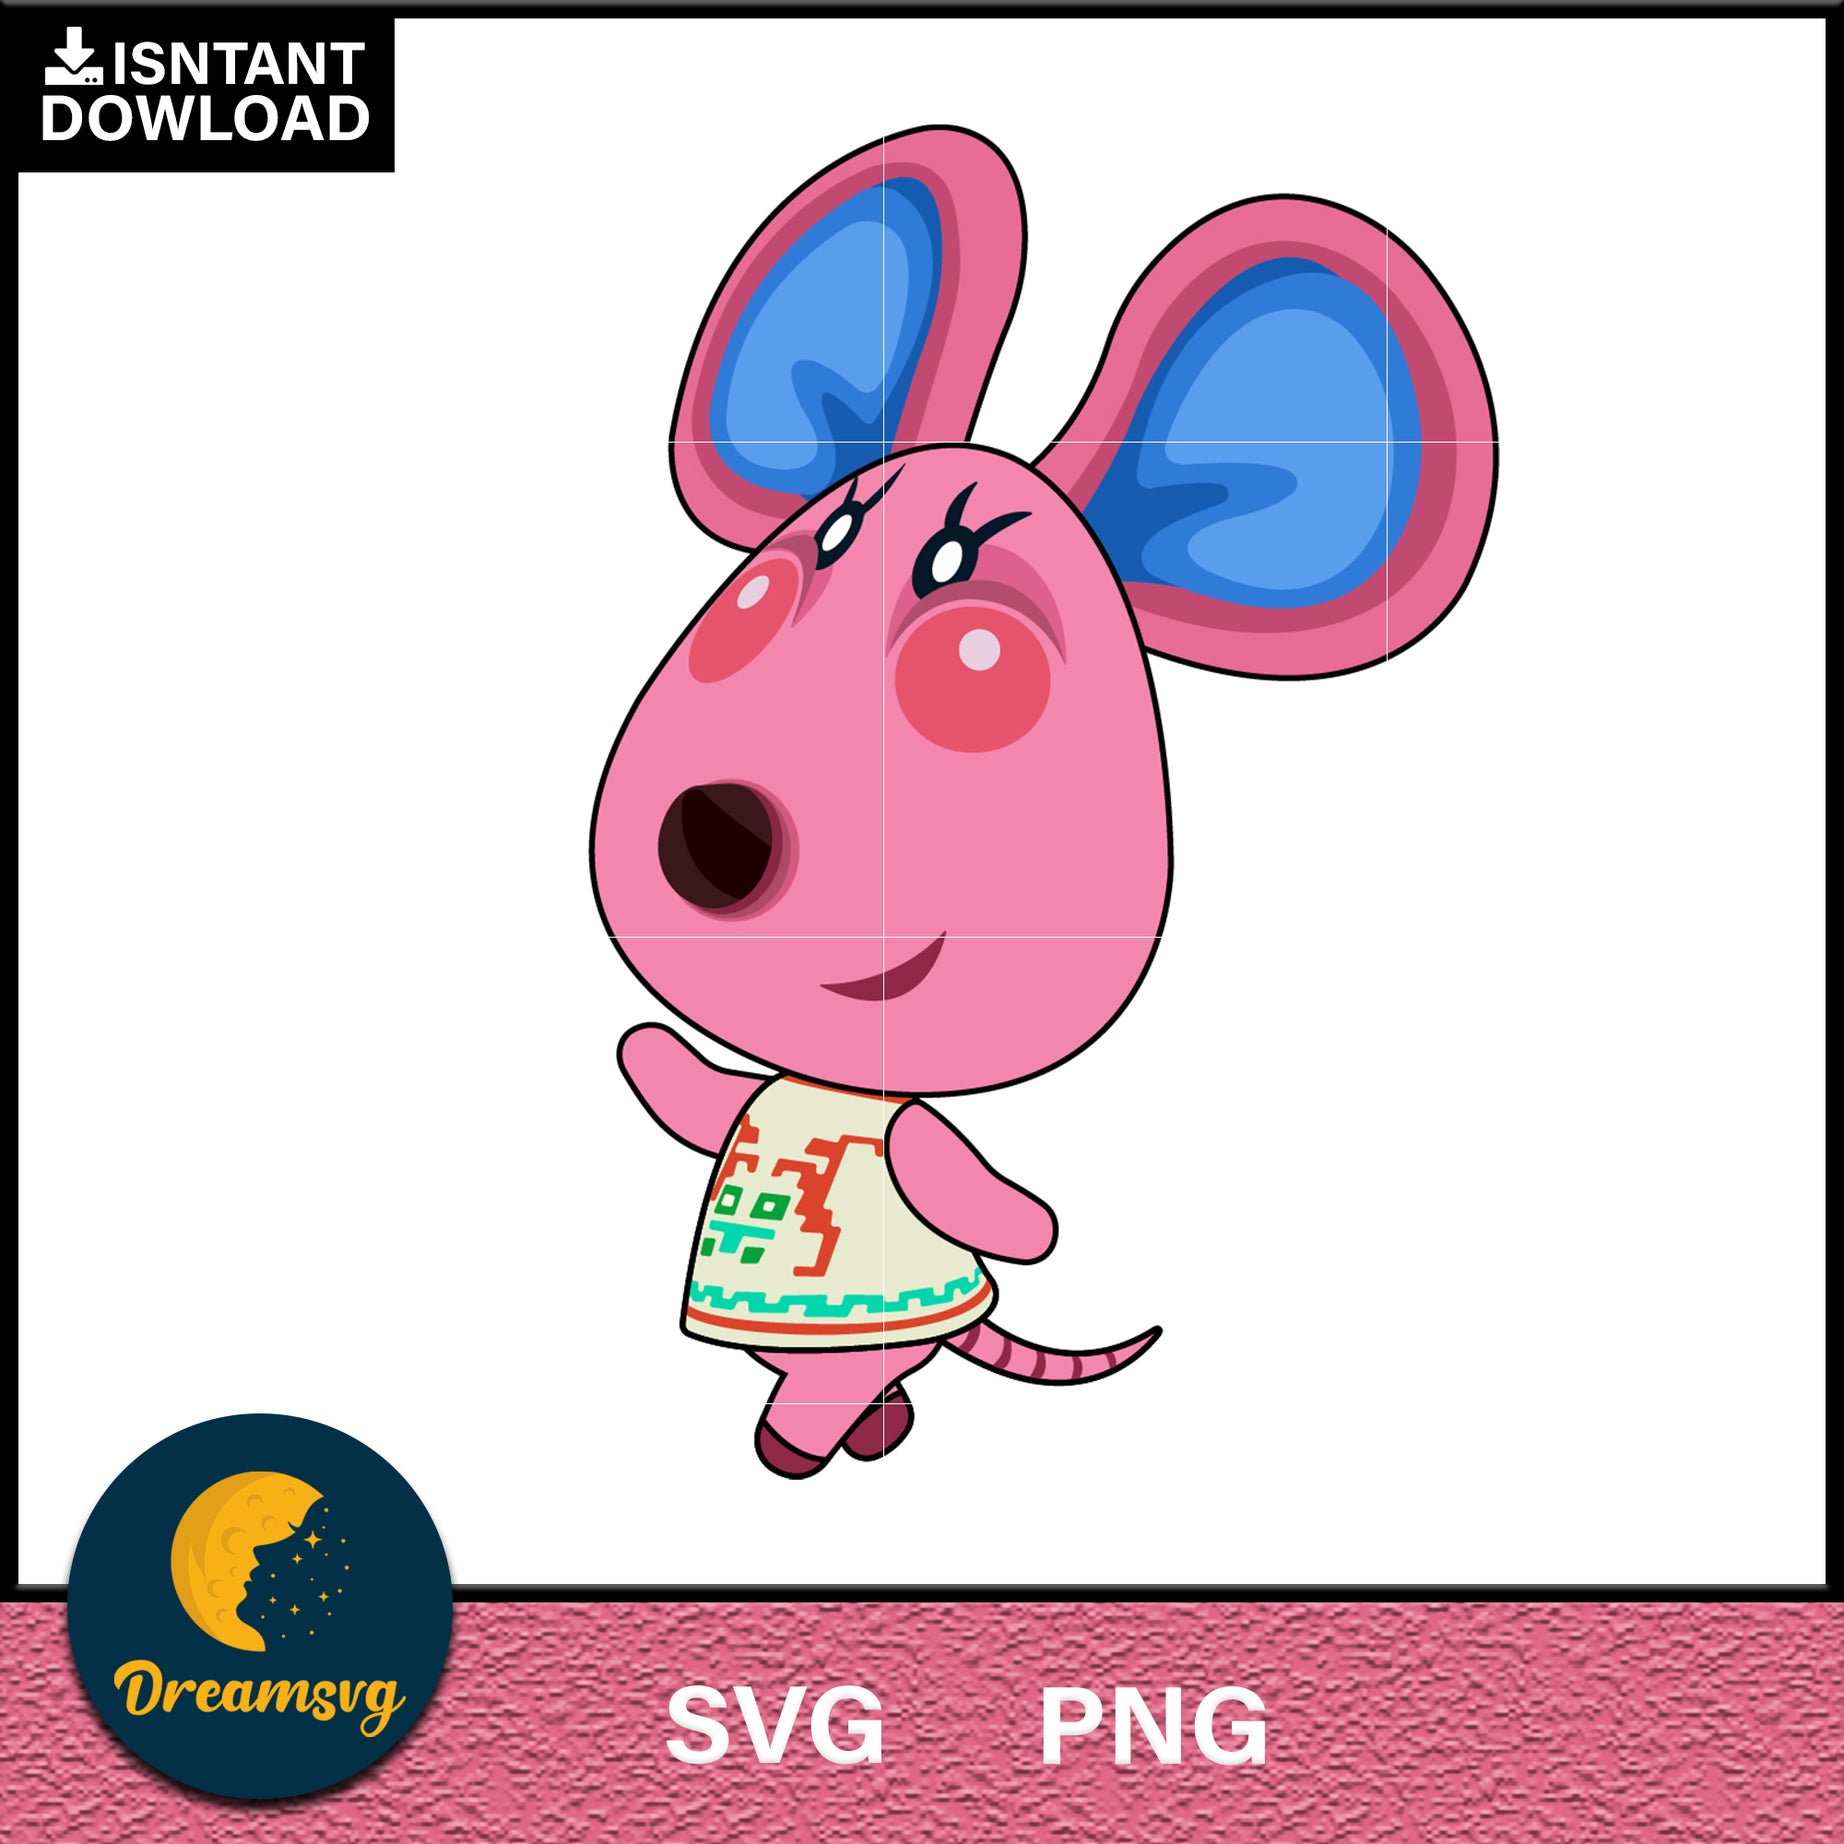 Candi Animal Crossing Svg, Animal Crossing Svg, Animal Crossing Png, Cartoon svg, svg, png digital file